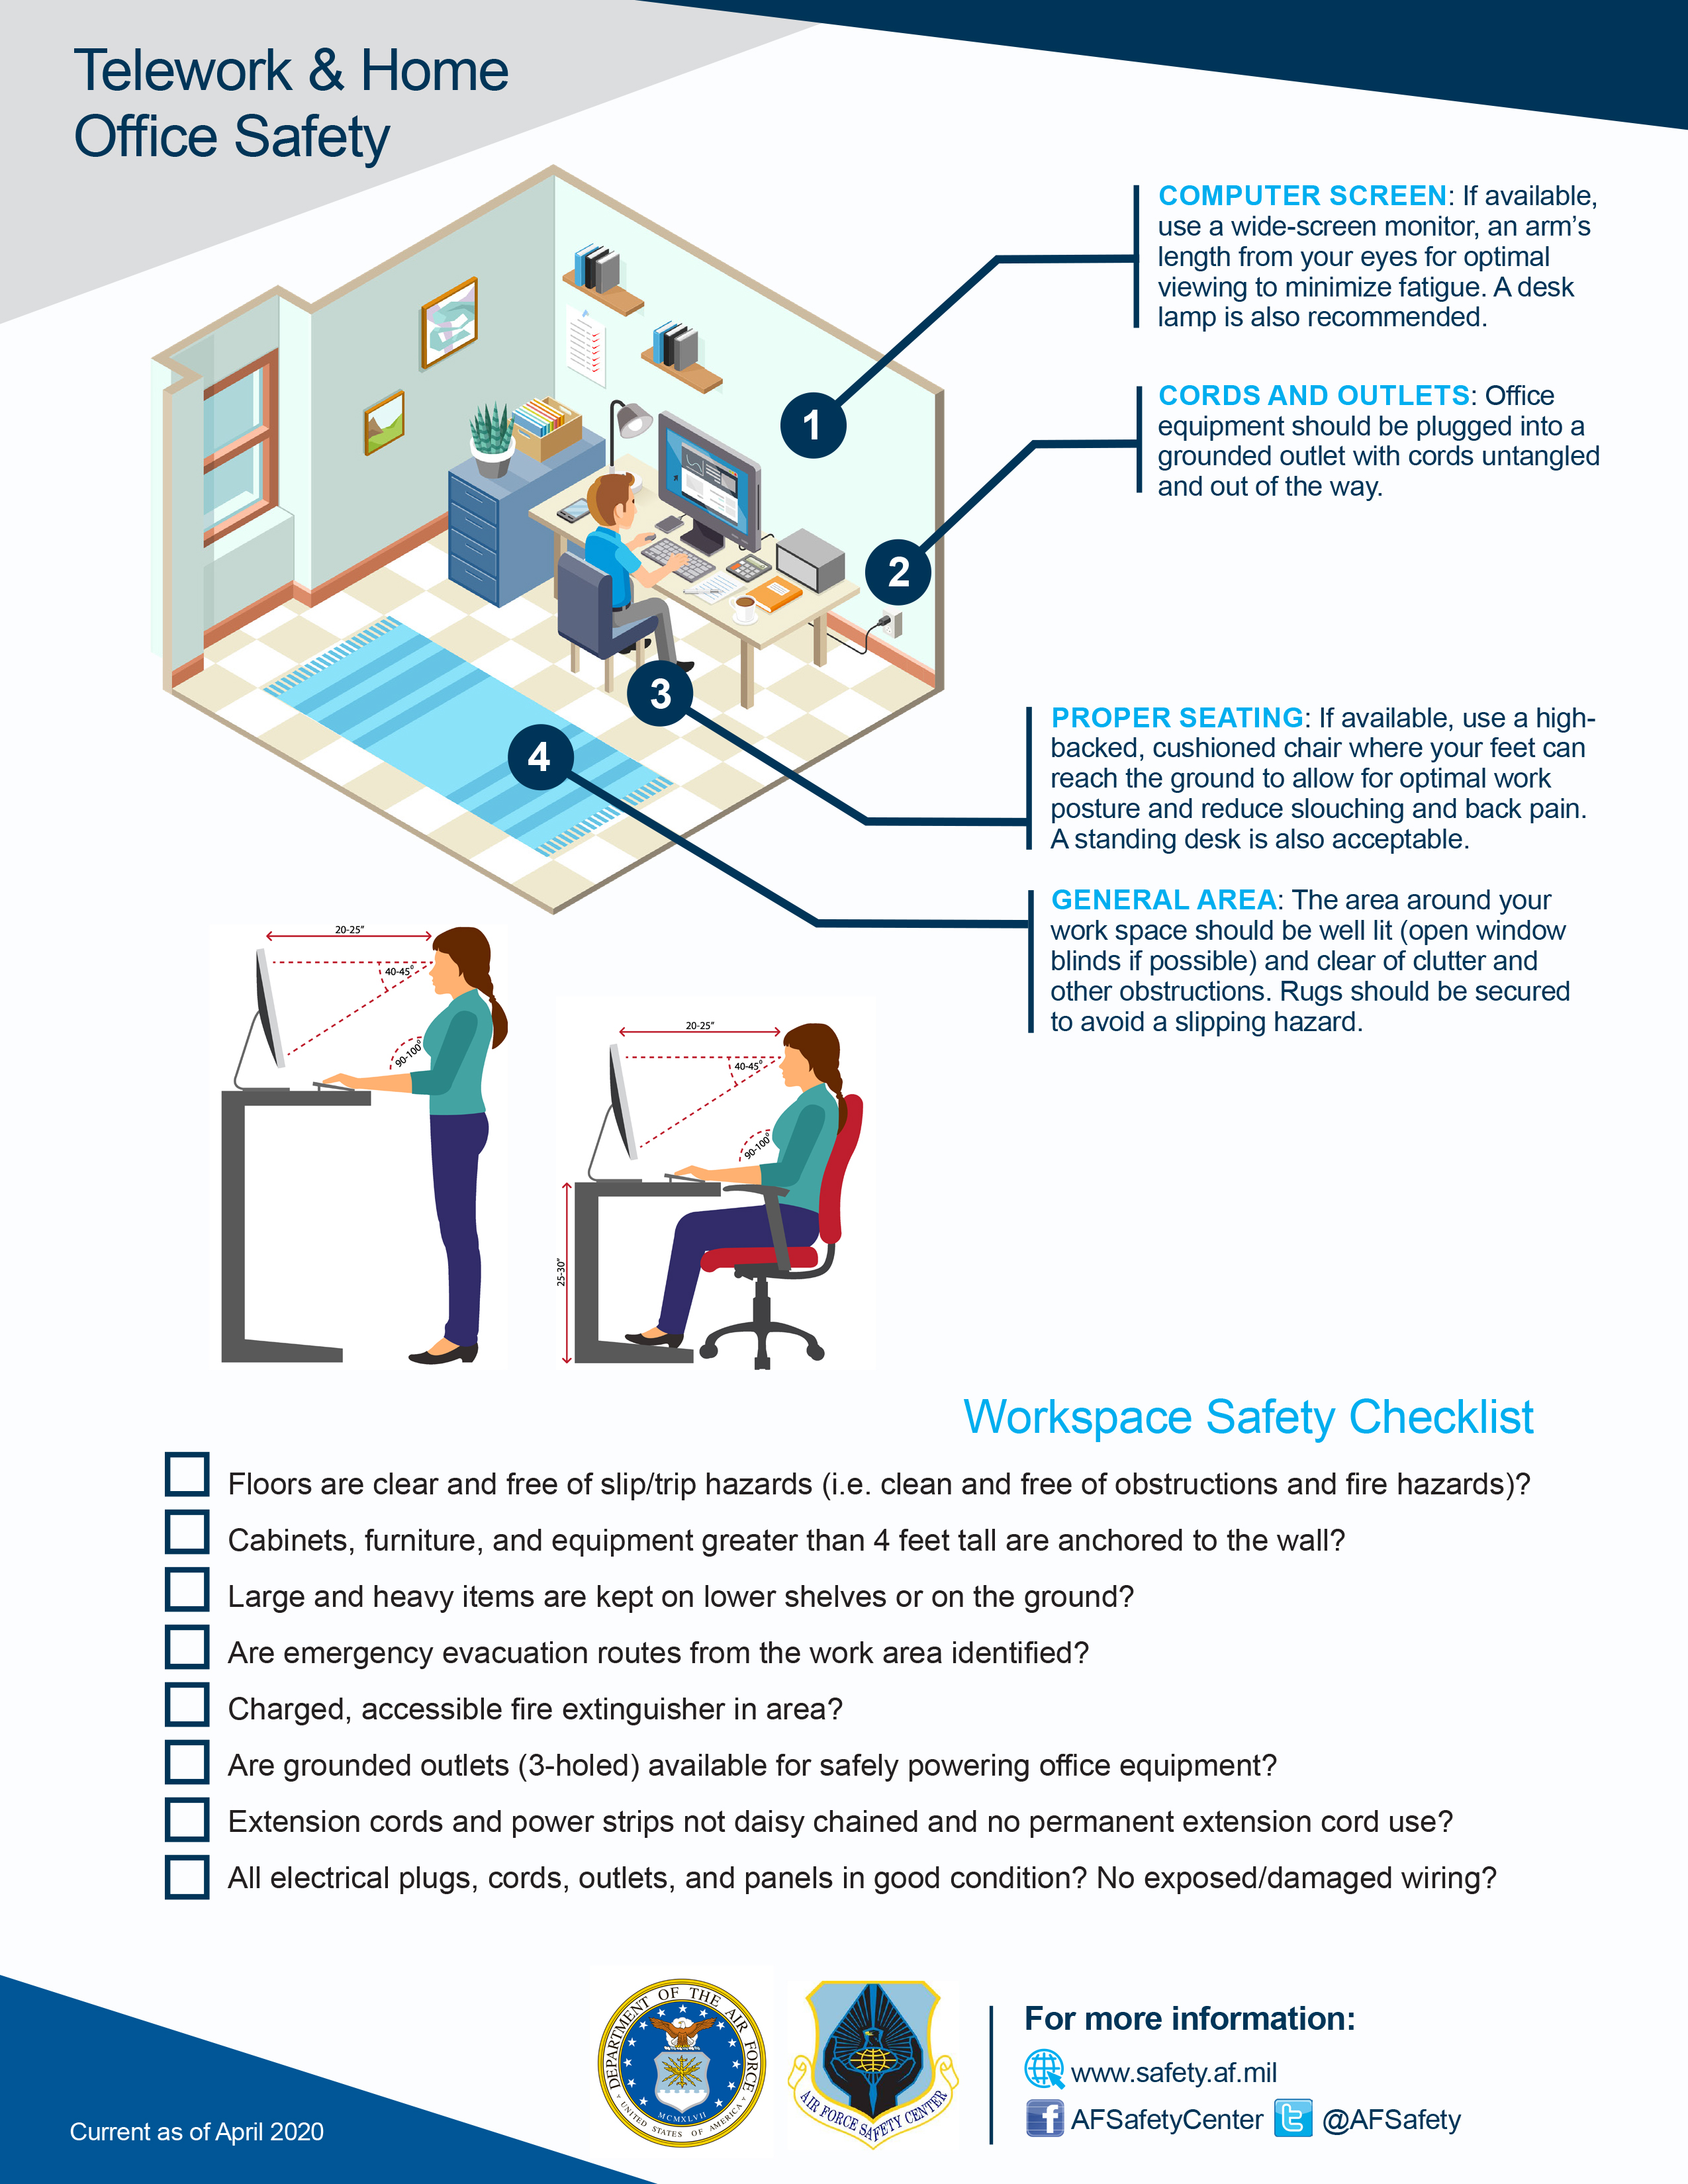 Telework & Home Office Safety Checklist